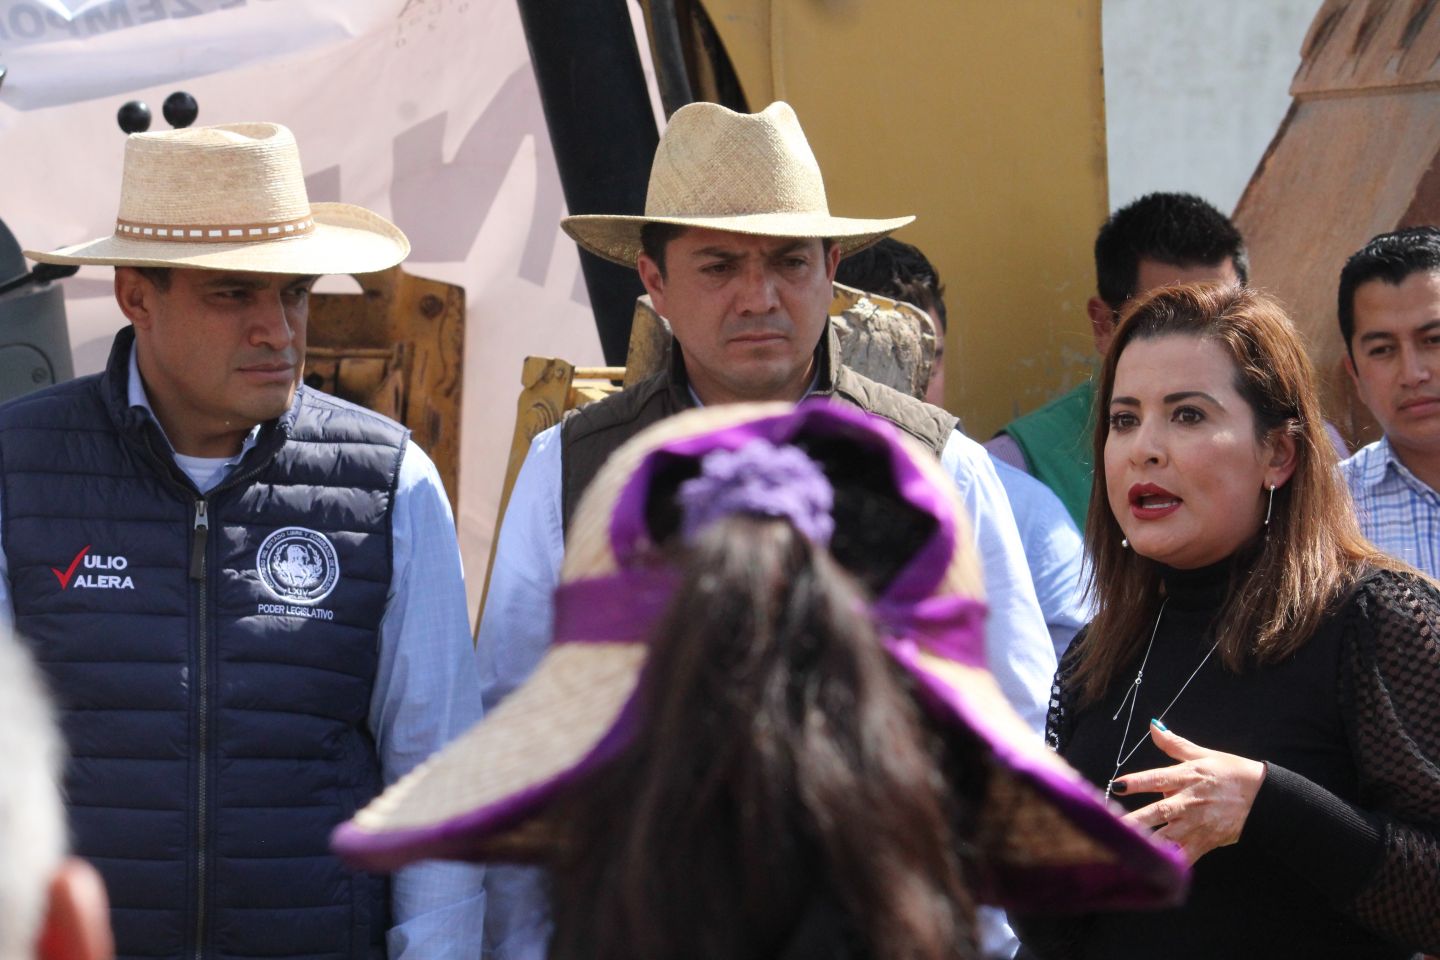 El Diputado Plurinominal del Congreso del Estado de Hidalgo, Mtro. Julio Valera Piedras, se reunió con el Munícipe de Zempoala Ing. Héctor Meneses Arrieta